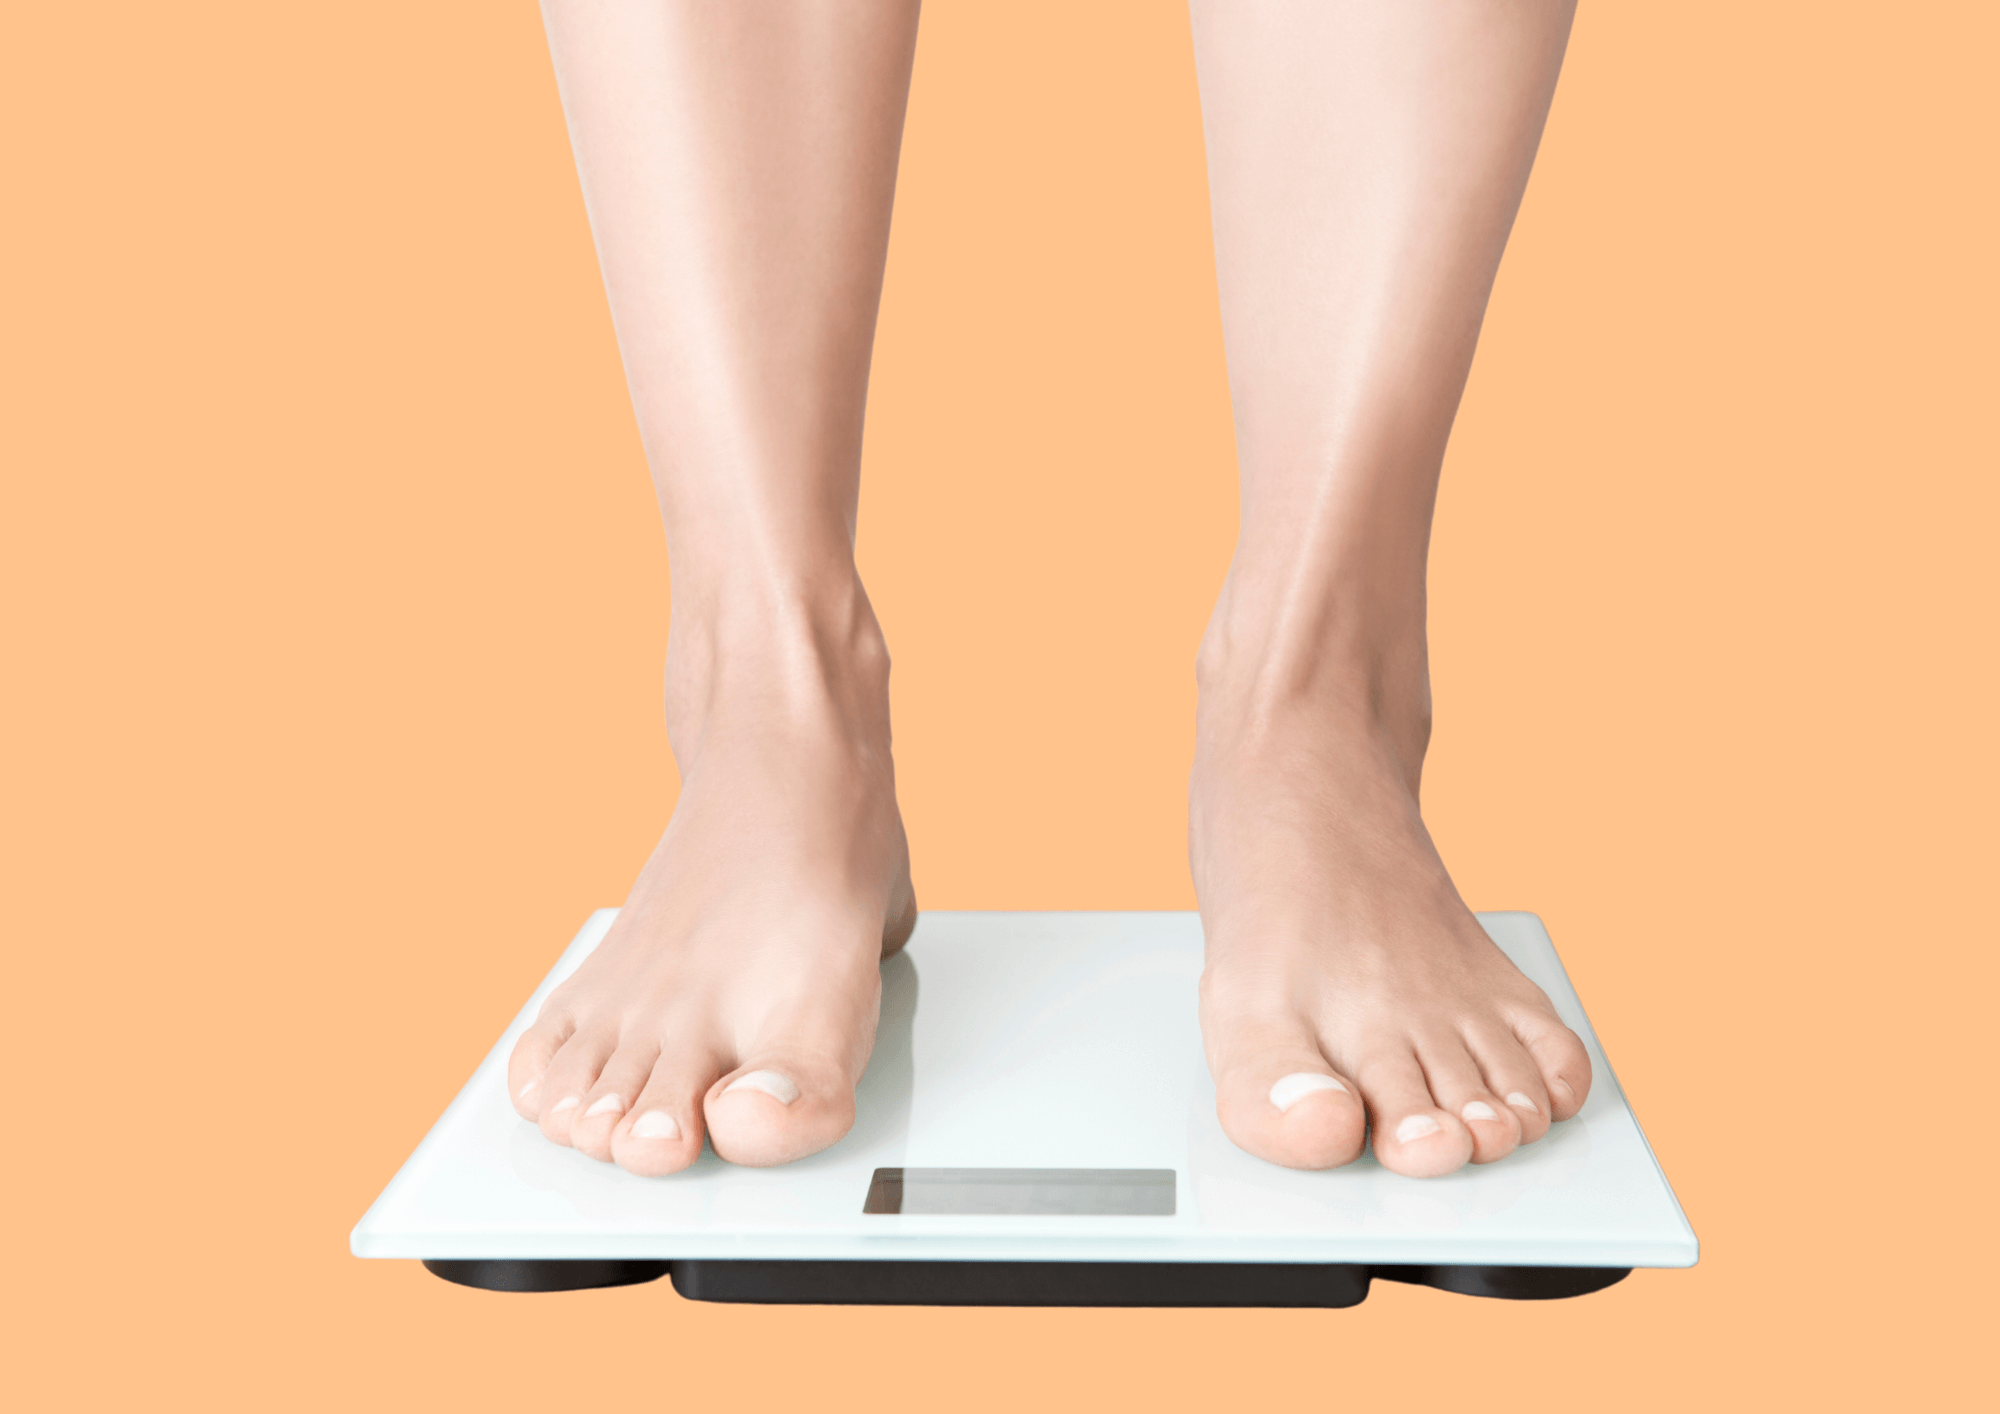 Starkes Übergewicht kann schwerwiegende gesundheitliche Folgen haben.